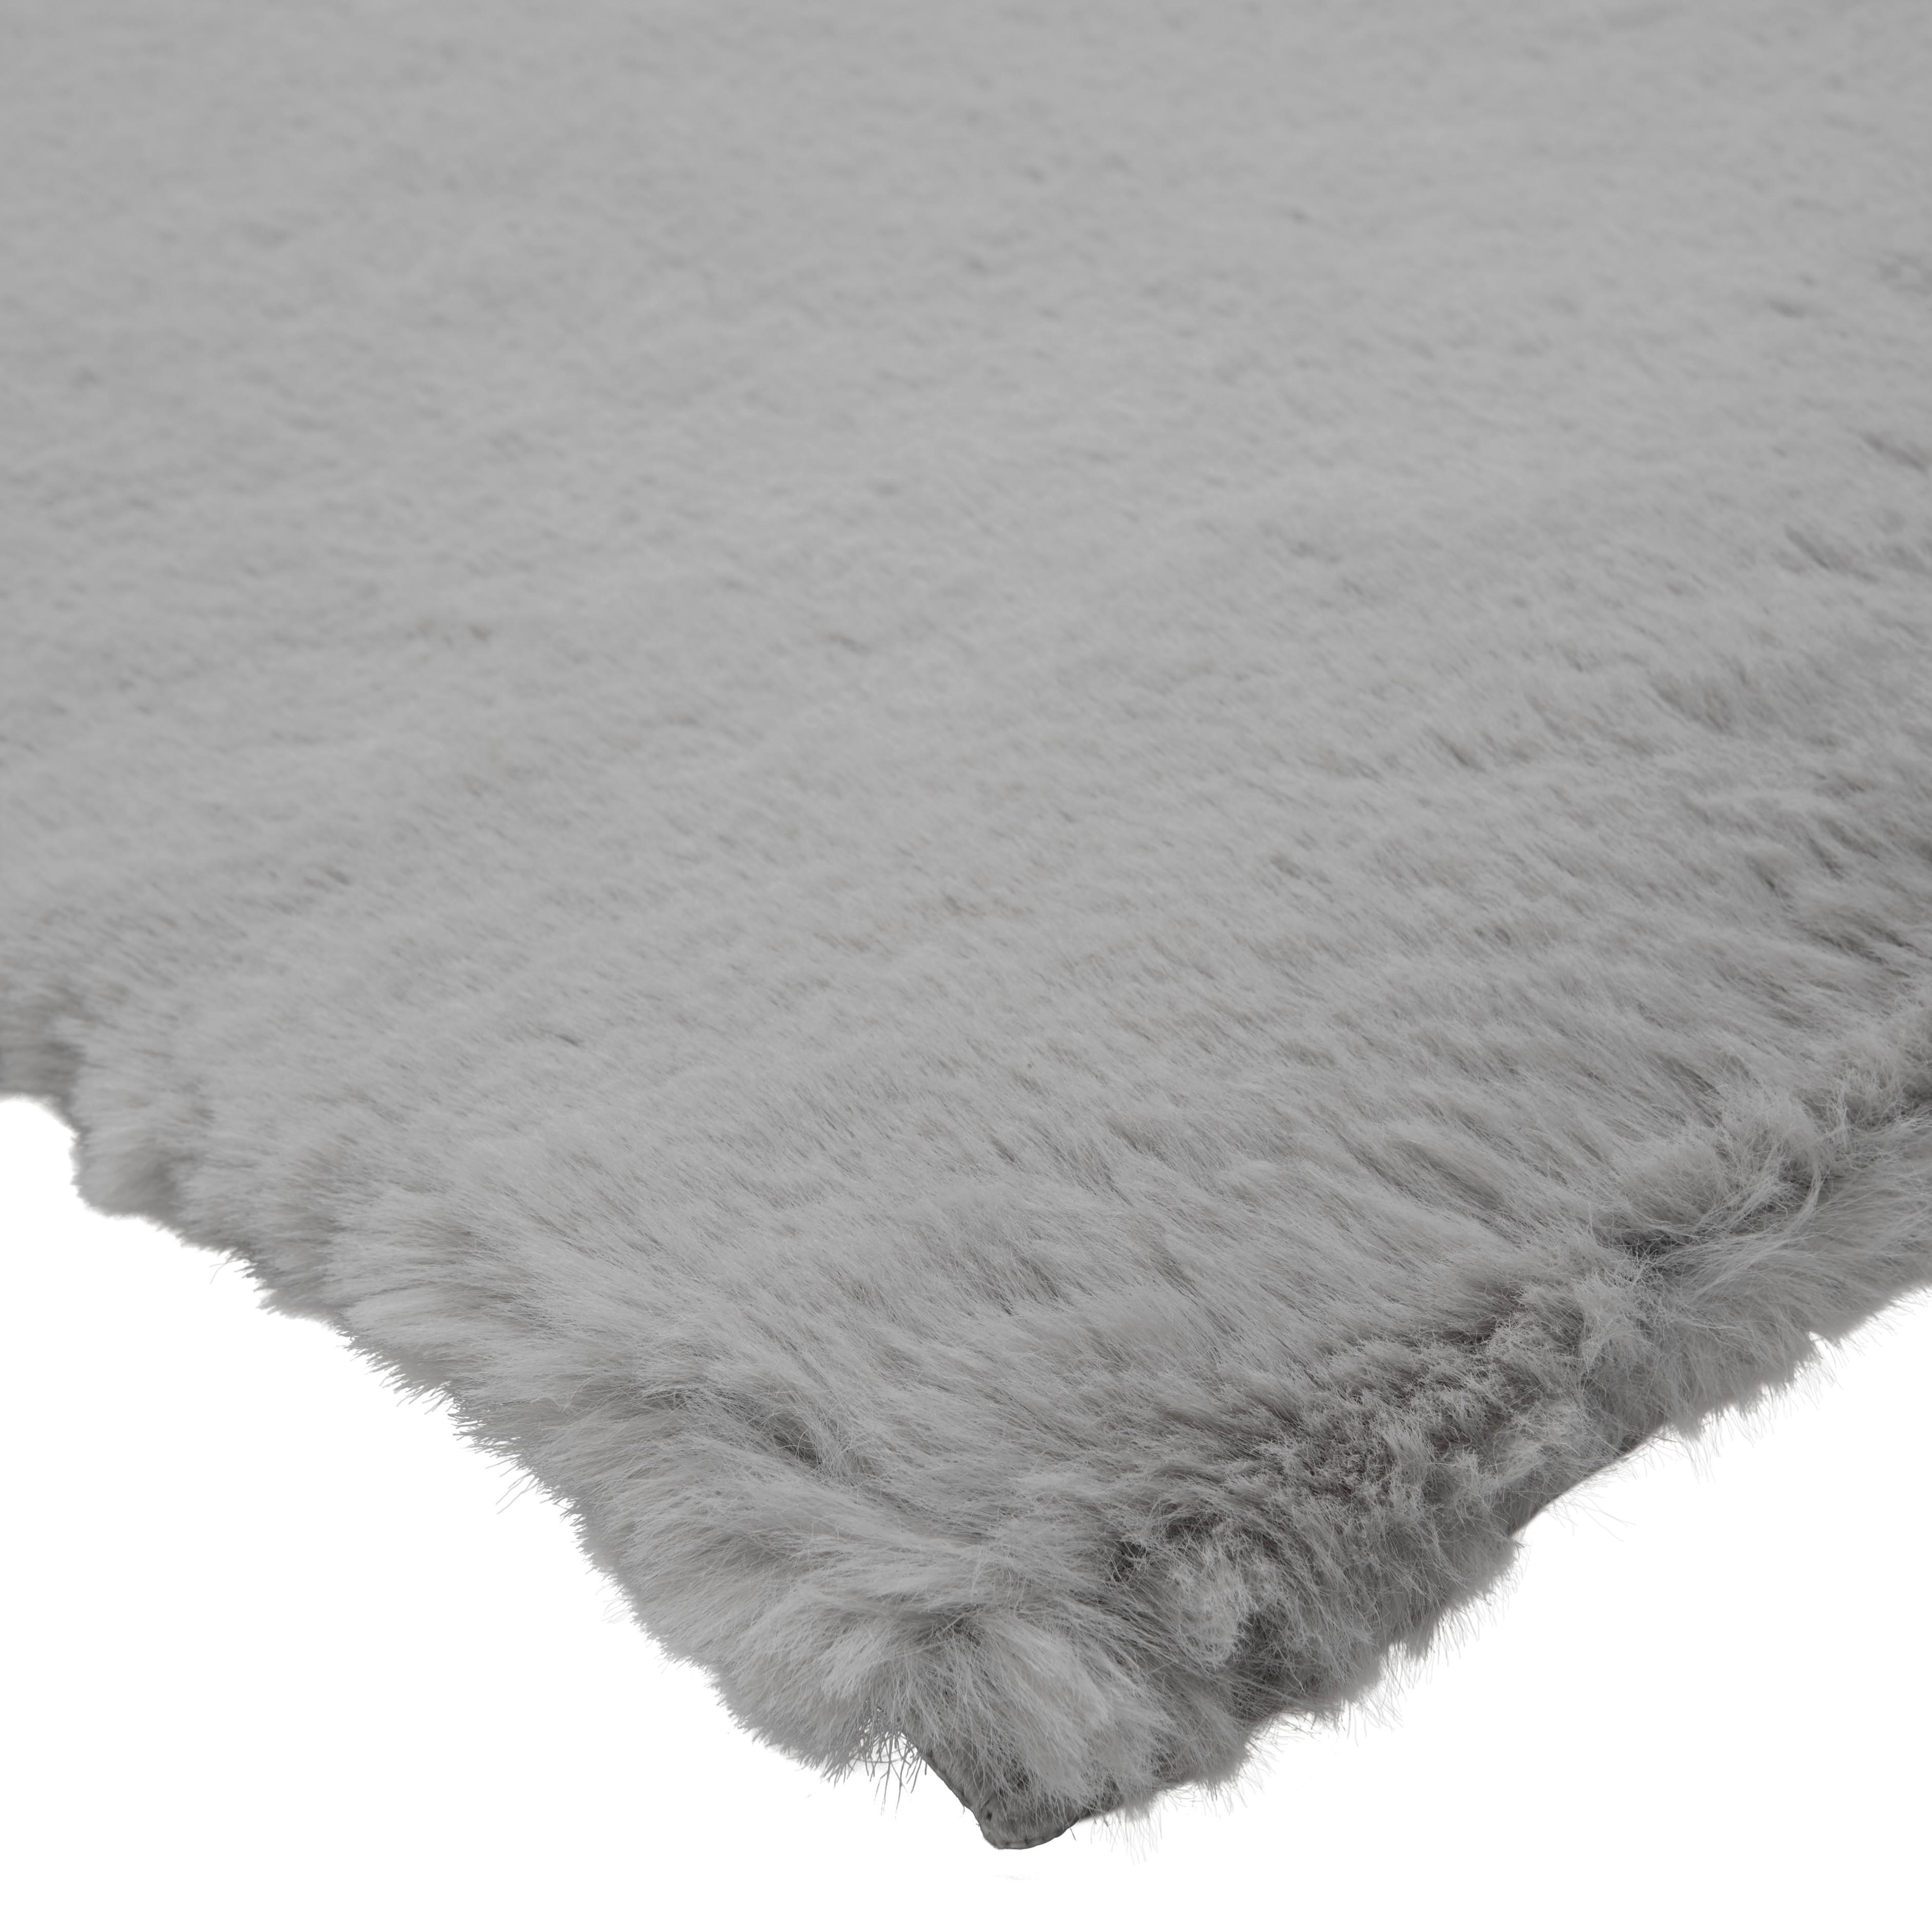 Tkaný Koberec Fuzzy 3, 160/230cm, Sivá - sivá, Moderný, textil (160/230cm) - Modern Living